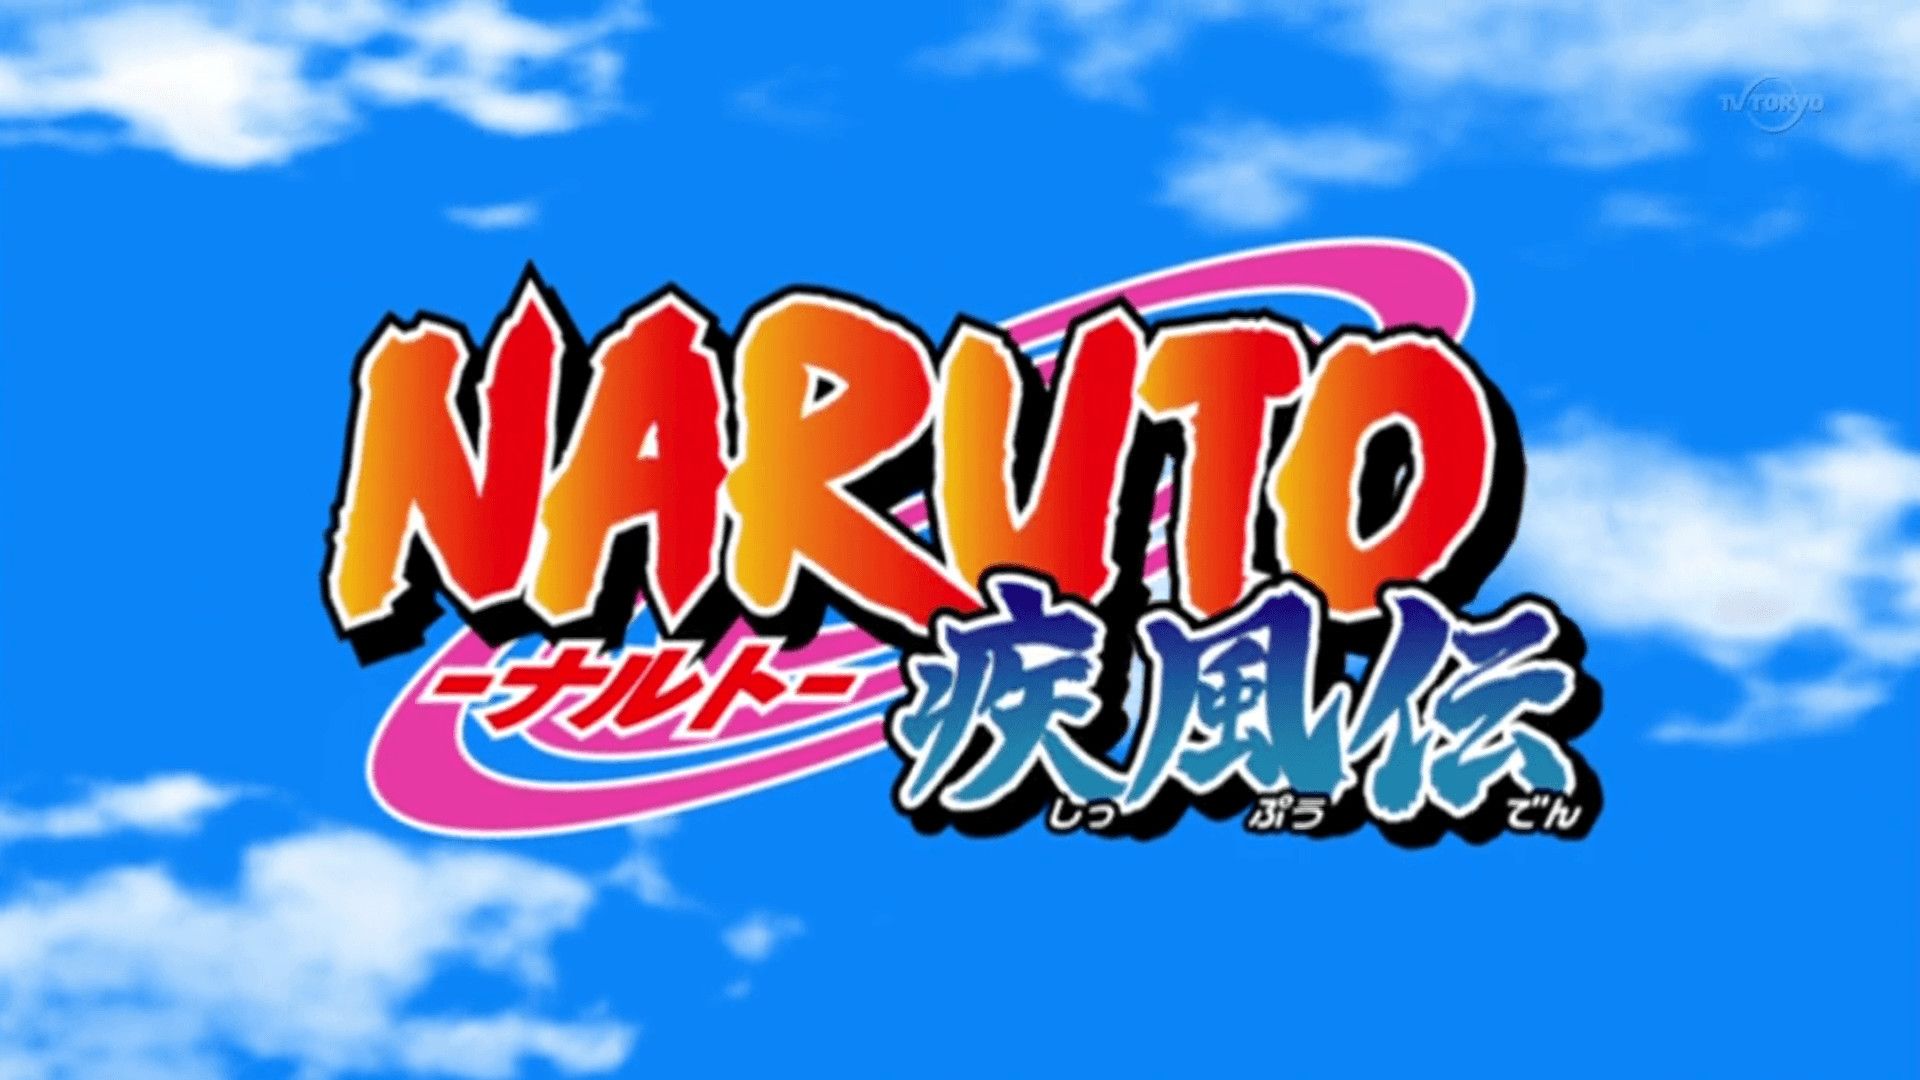 NARUTO -ナルト- 疾風伝 Logo Blank Meme Template